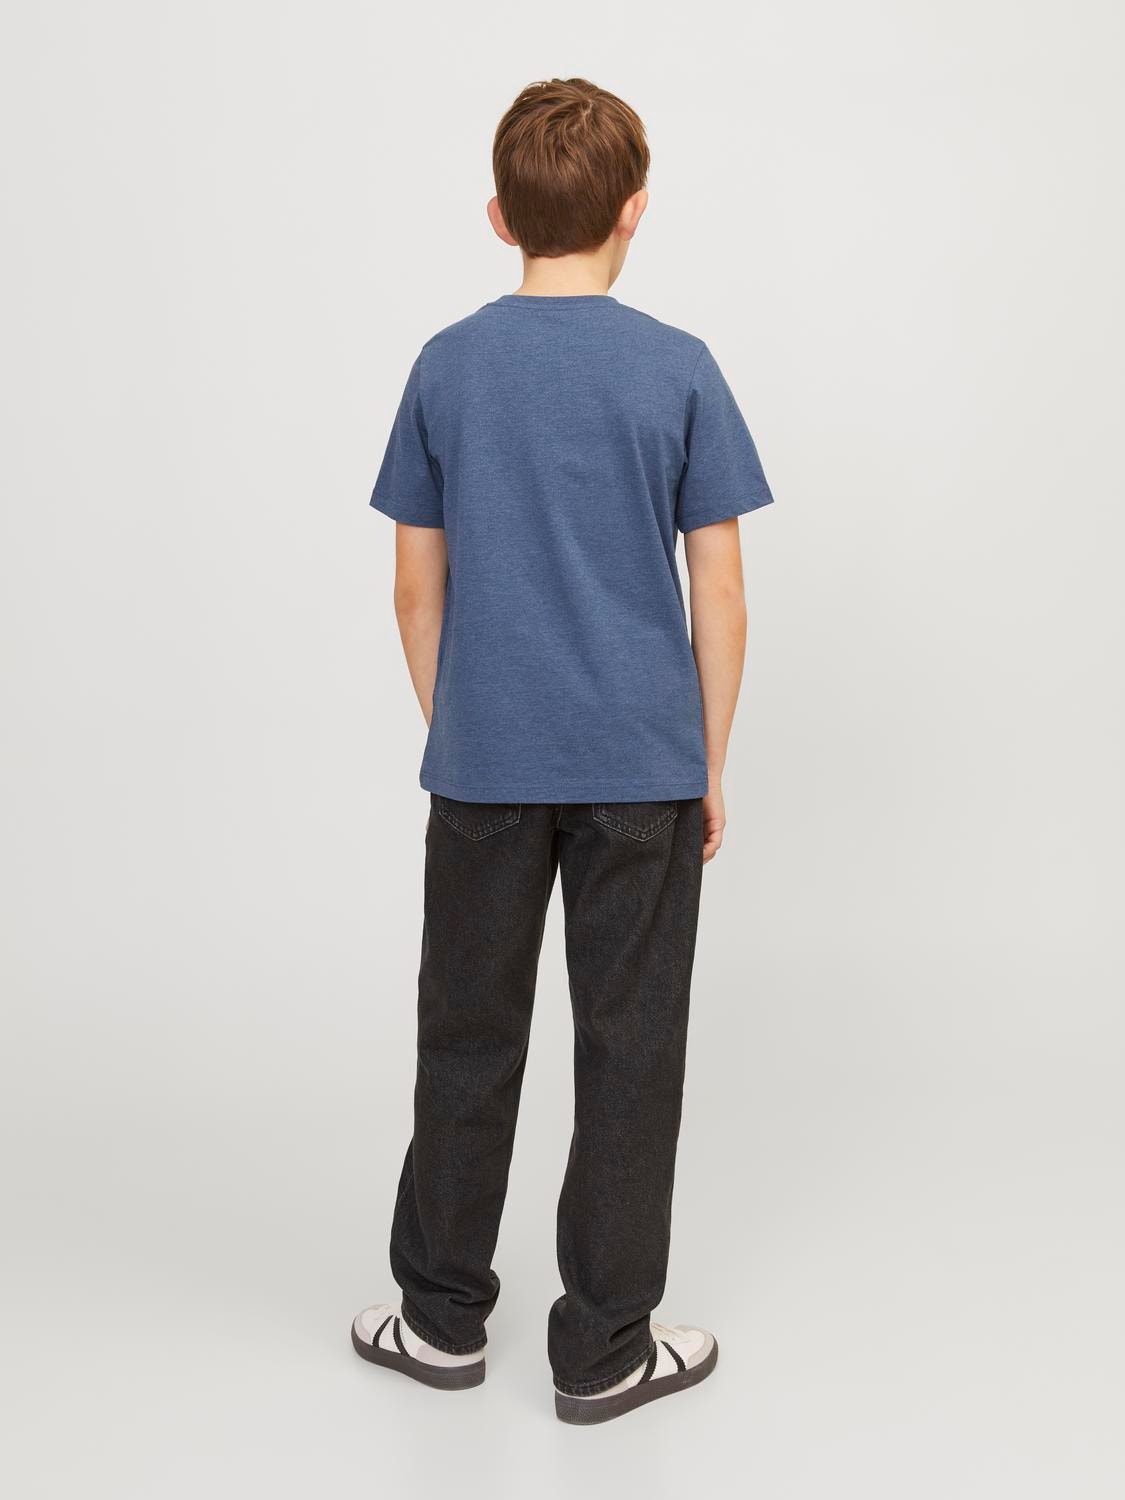 Jack & Jones Bedrukt T-shirt Voor jongens -Ensign Blue - 12237367